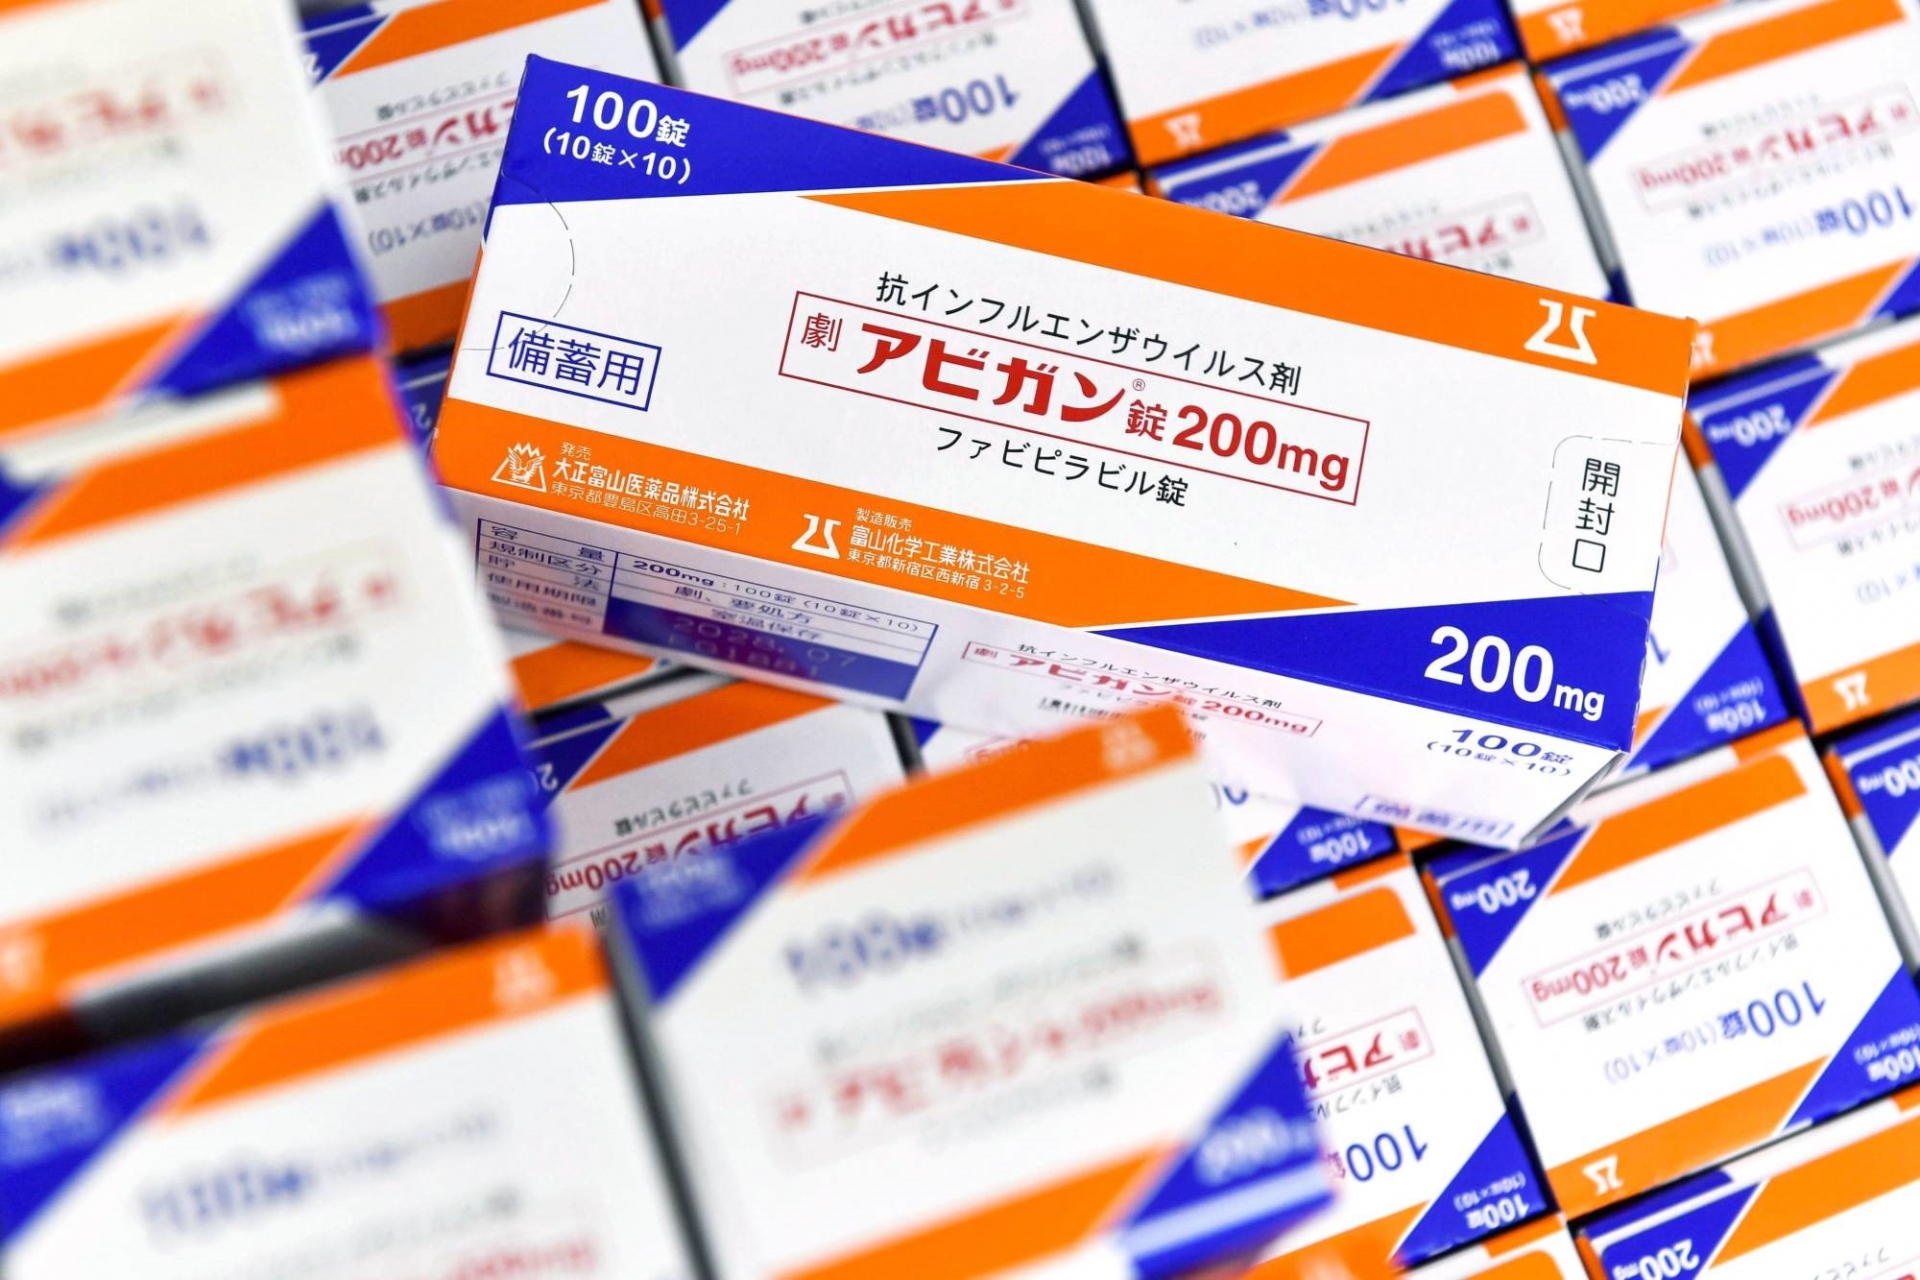 Việt Nam sẽ tiếp nhận một triệu viên thuốc Avigan của Nhật Bản điều trị Covid-19